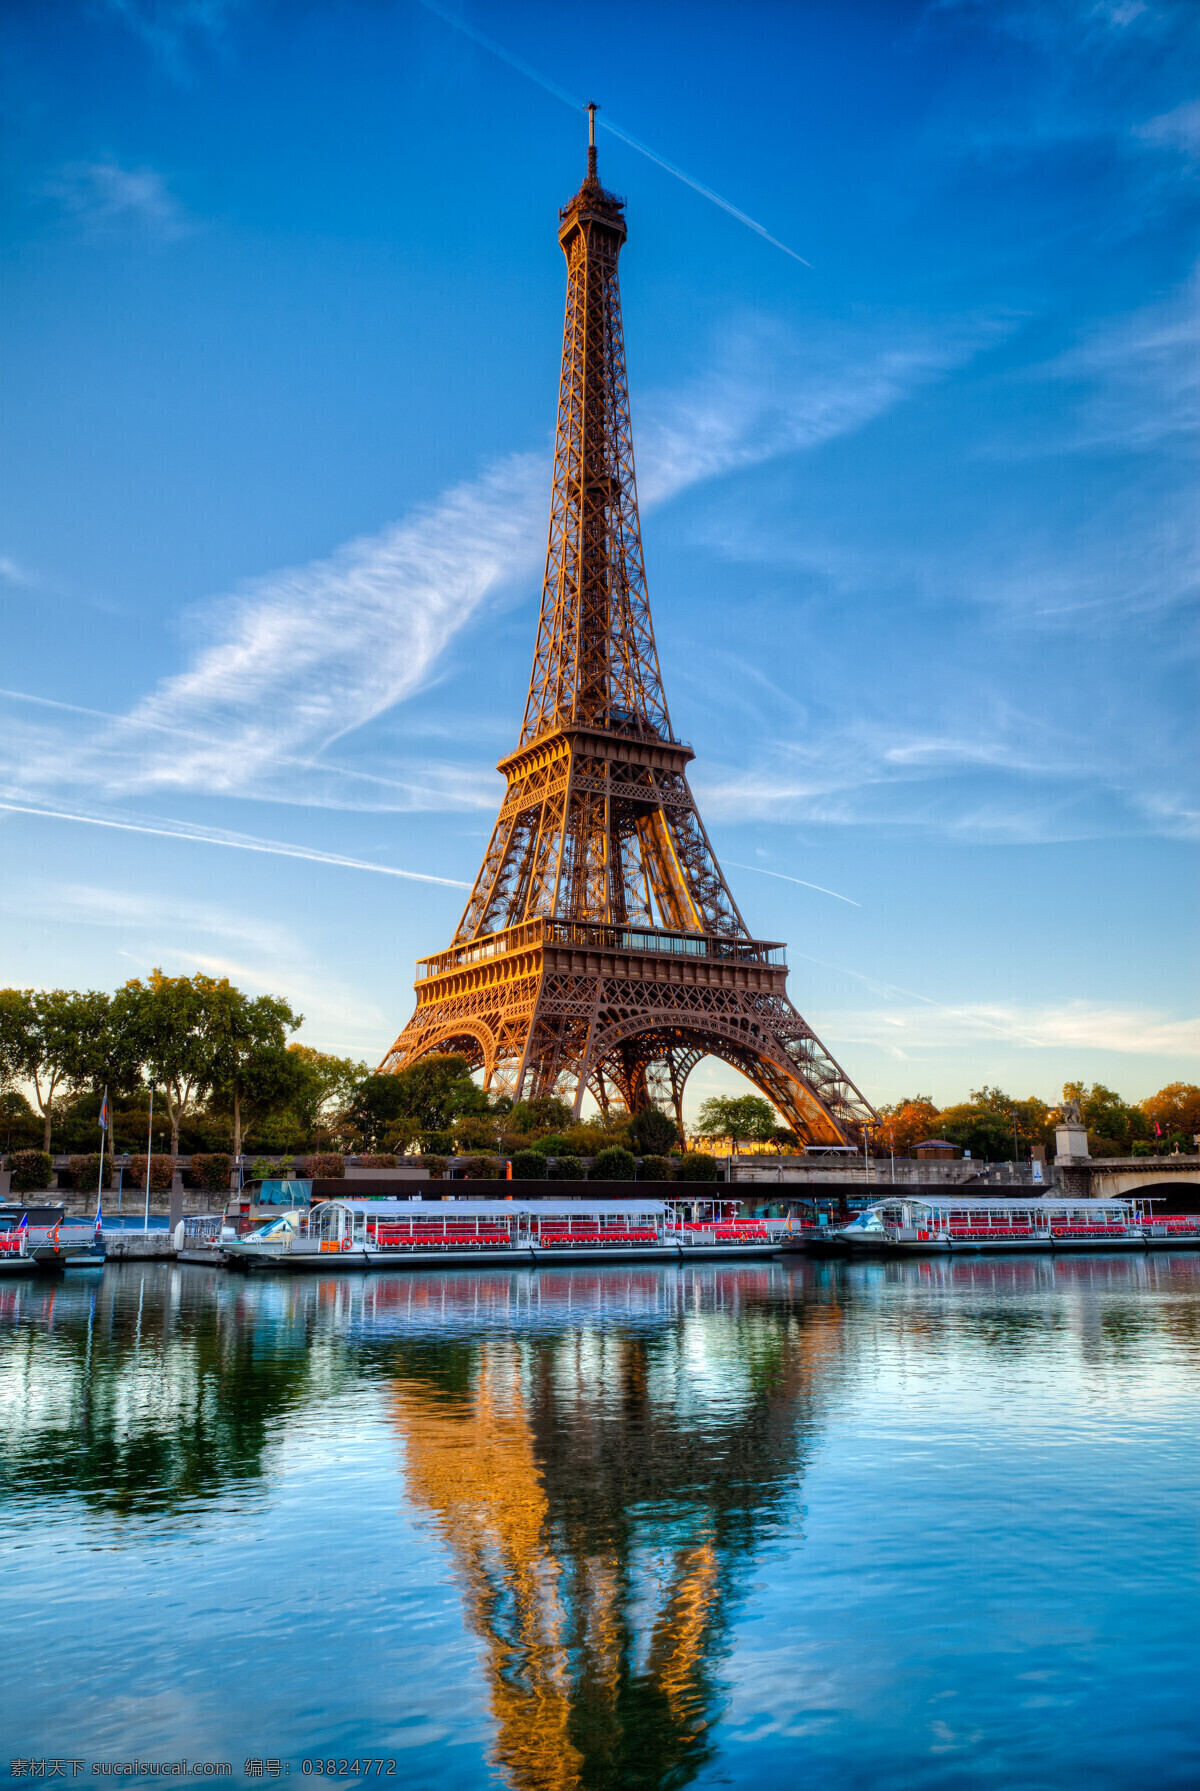 艾菲尔 铁 湖水 艾菲尔铁塔 建筑风光 城市图片 法国建筑 巴黎风光 铁塔 都市风光 美丽风光 美丽风景 名胜古迹 旅游胜地 风景名胜 风景图片